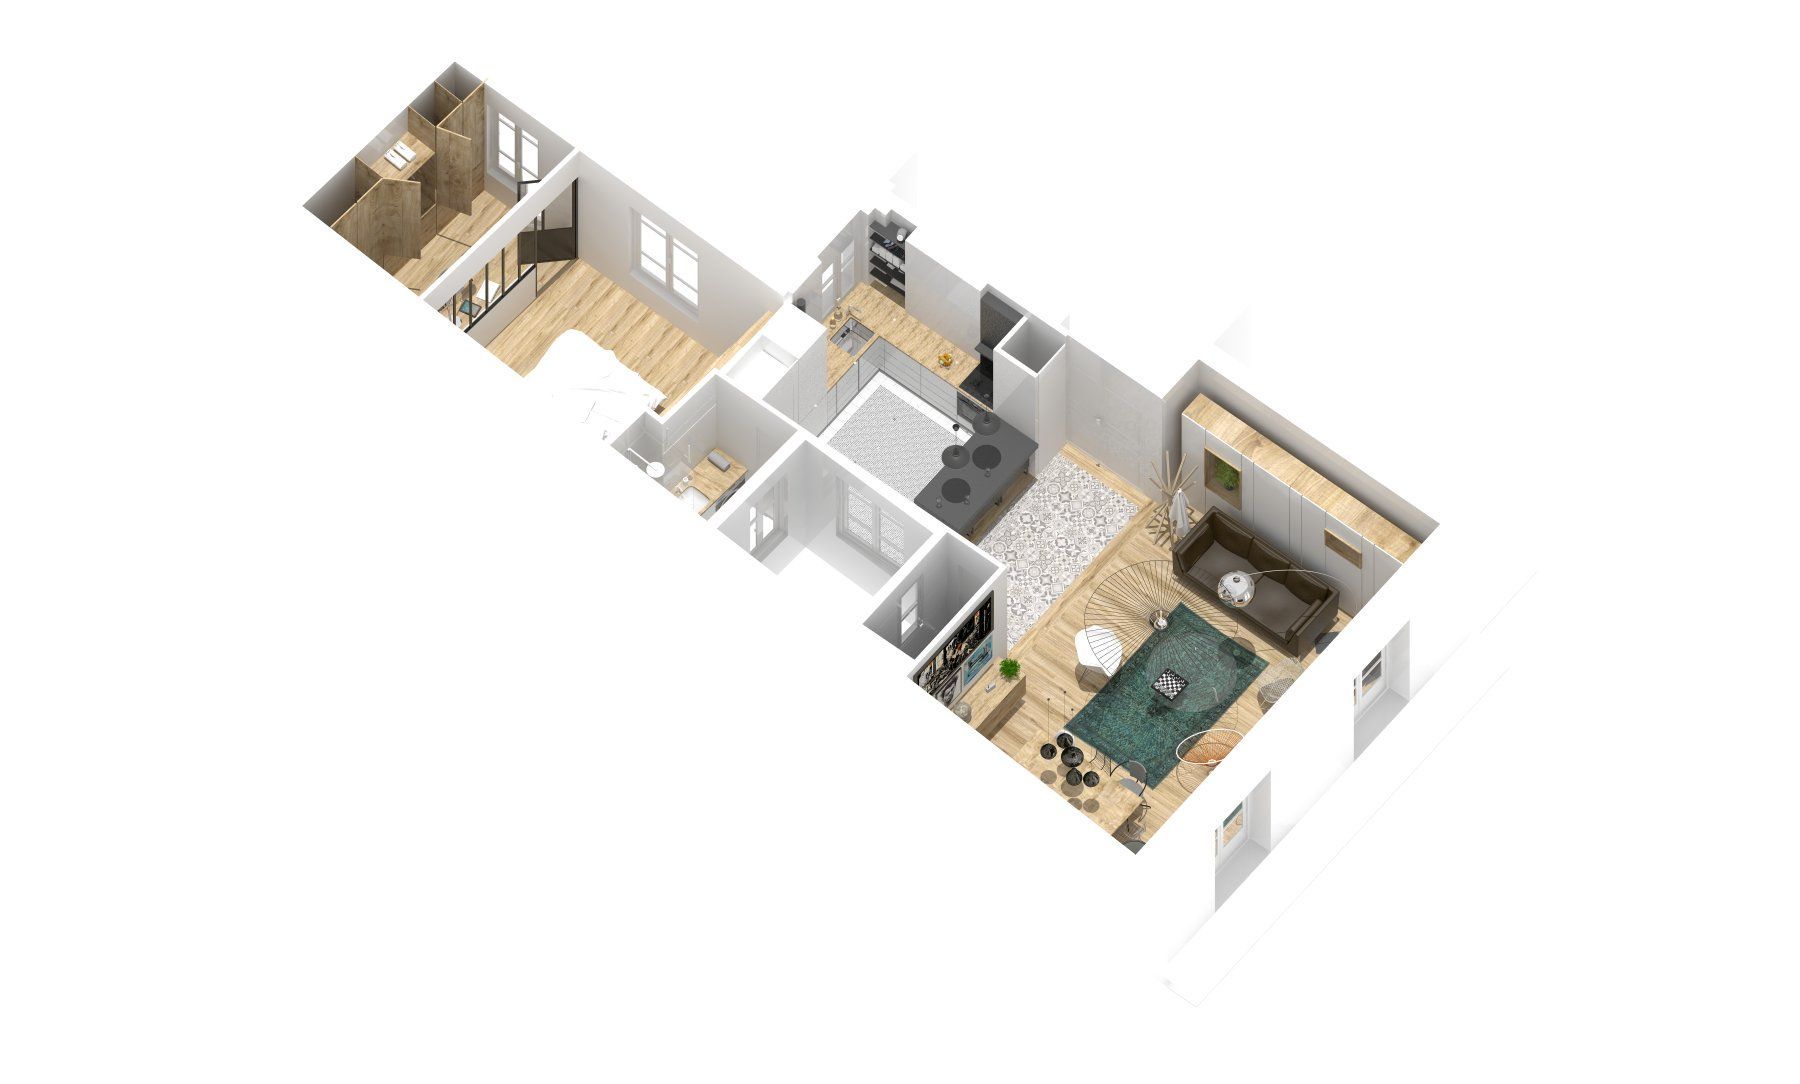 Maquette de l'aménagement de l'ensemble de l'appartement